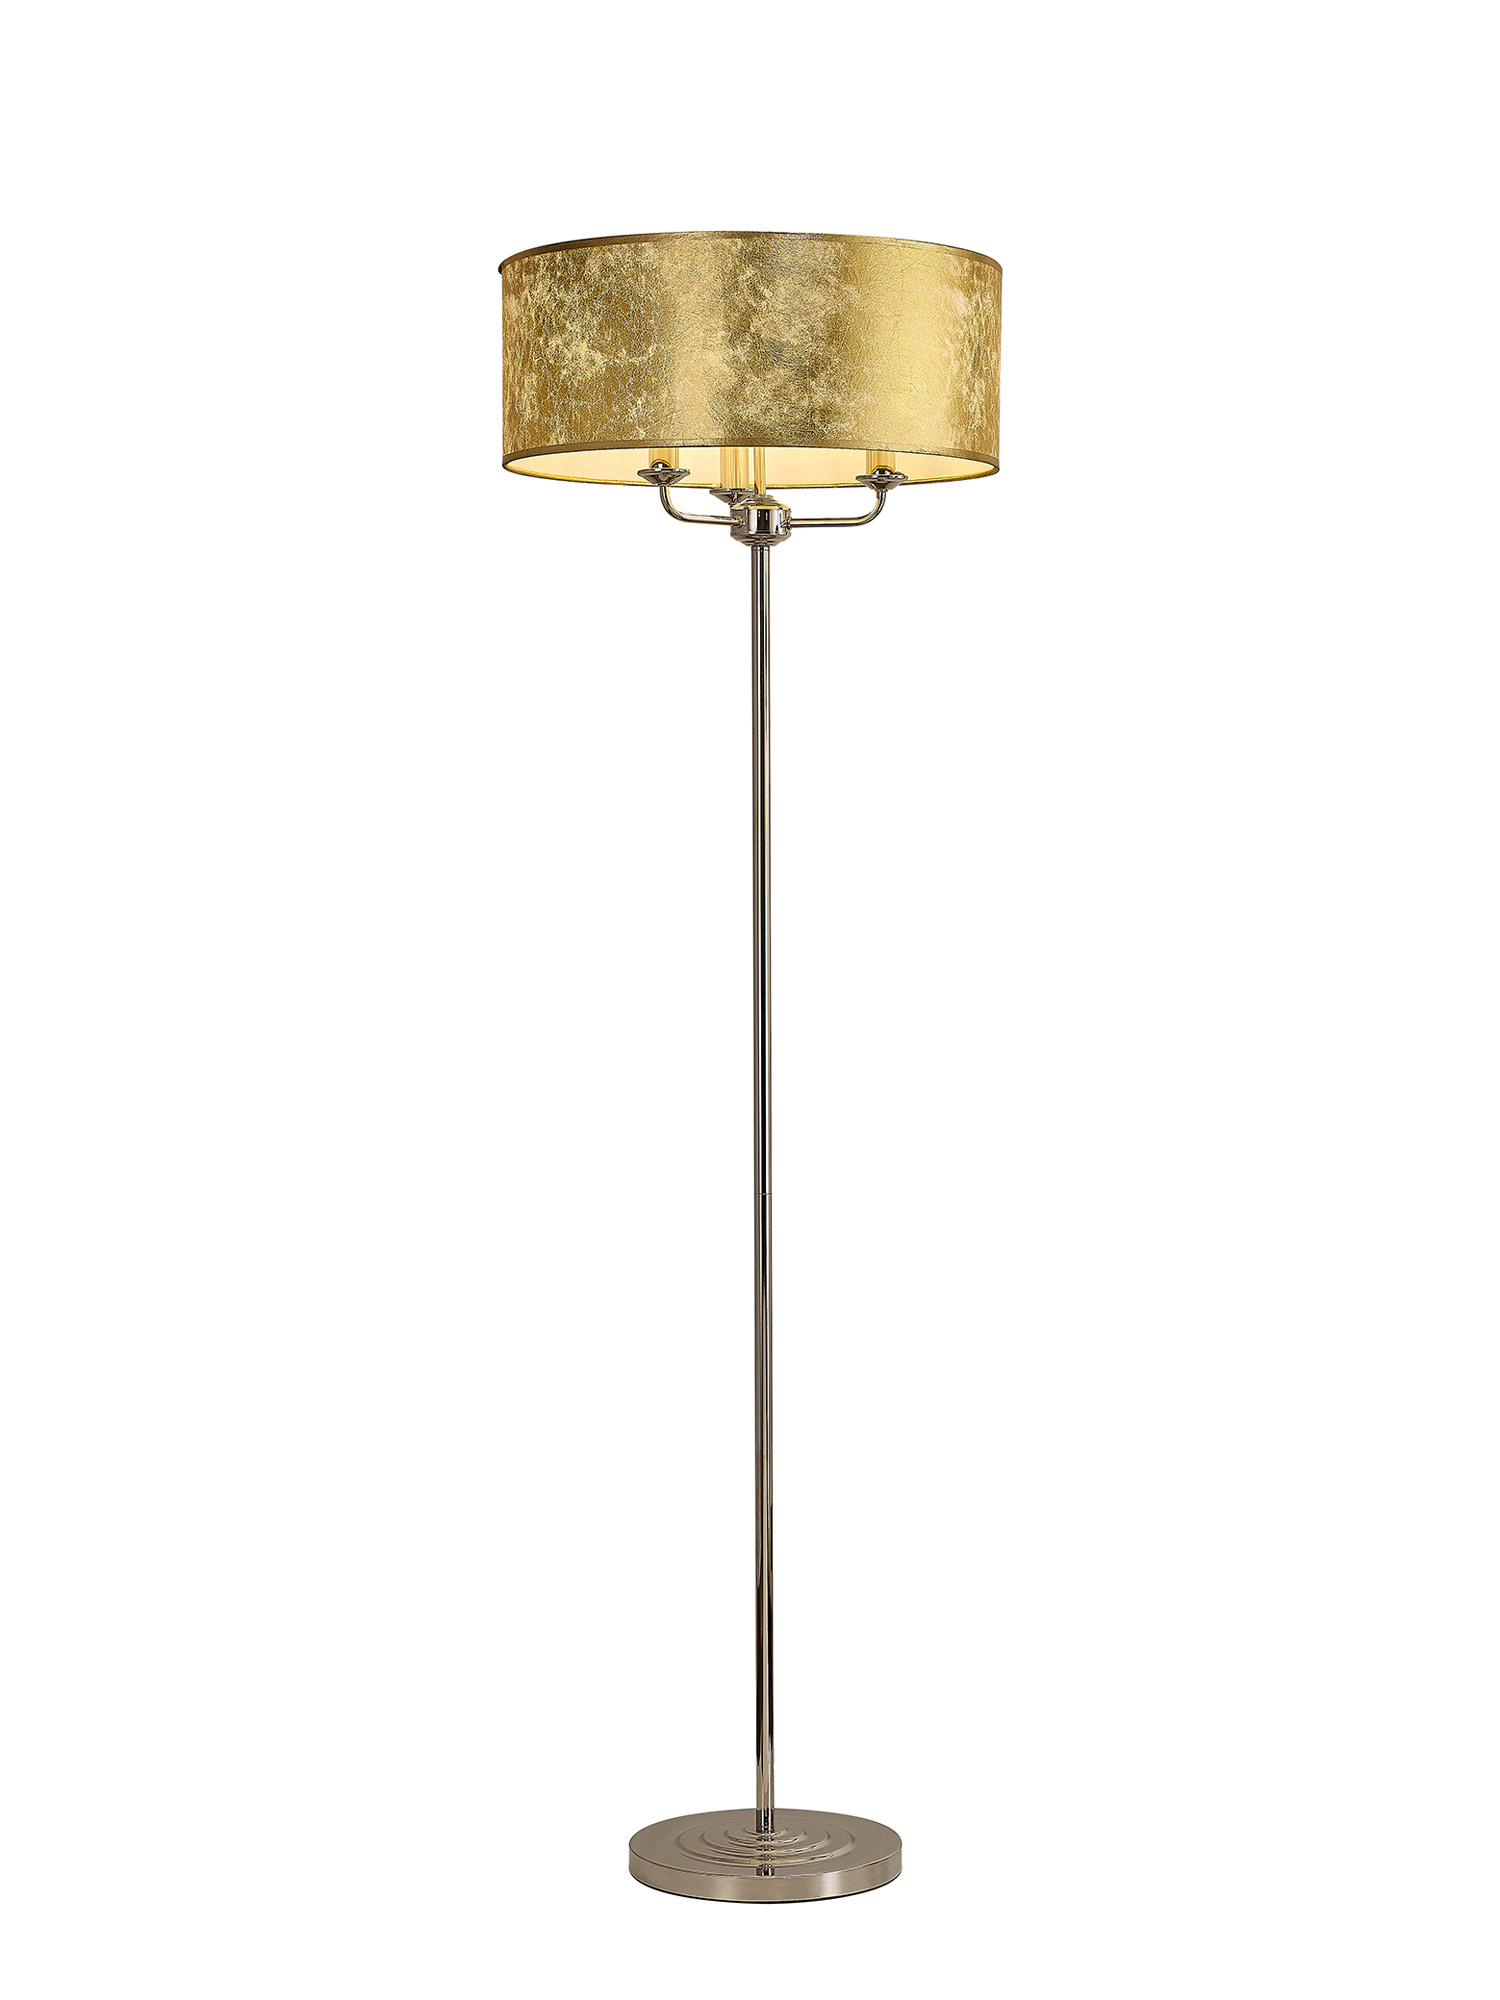 DK0899  Banyan 45cm 3 Light Floor Lamp Polished Nickel; Gold Leaf